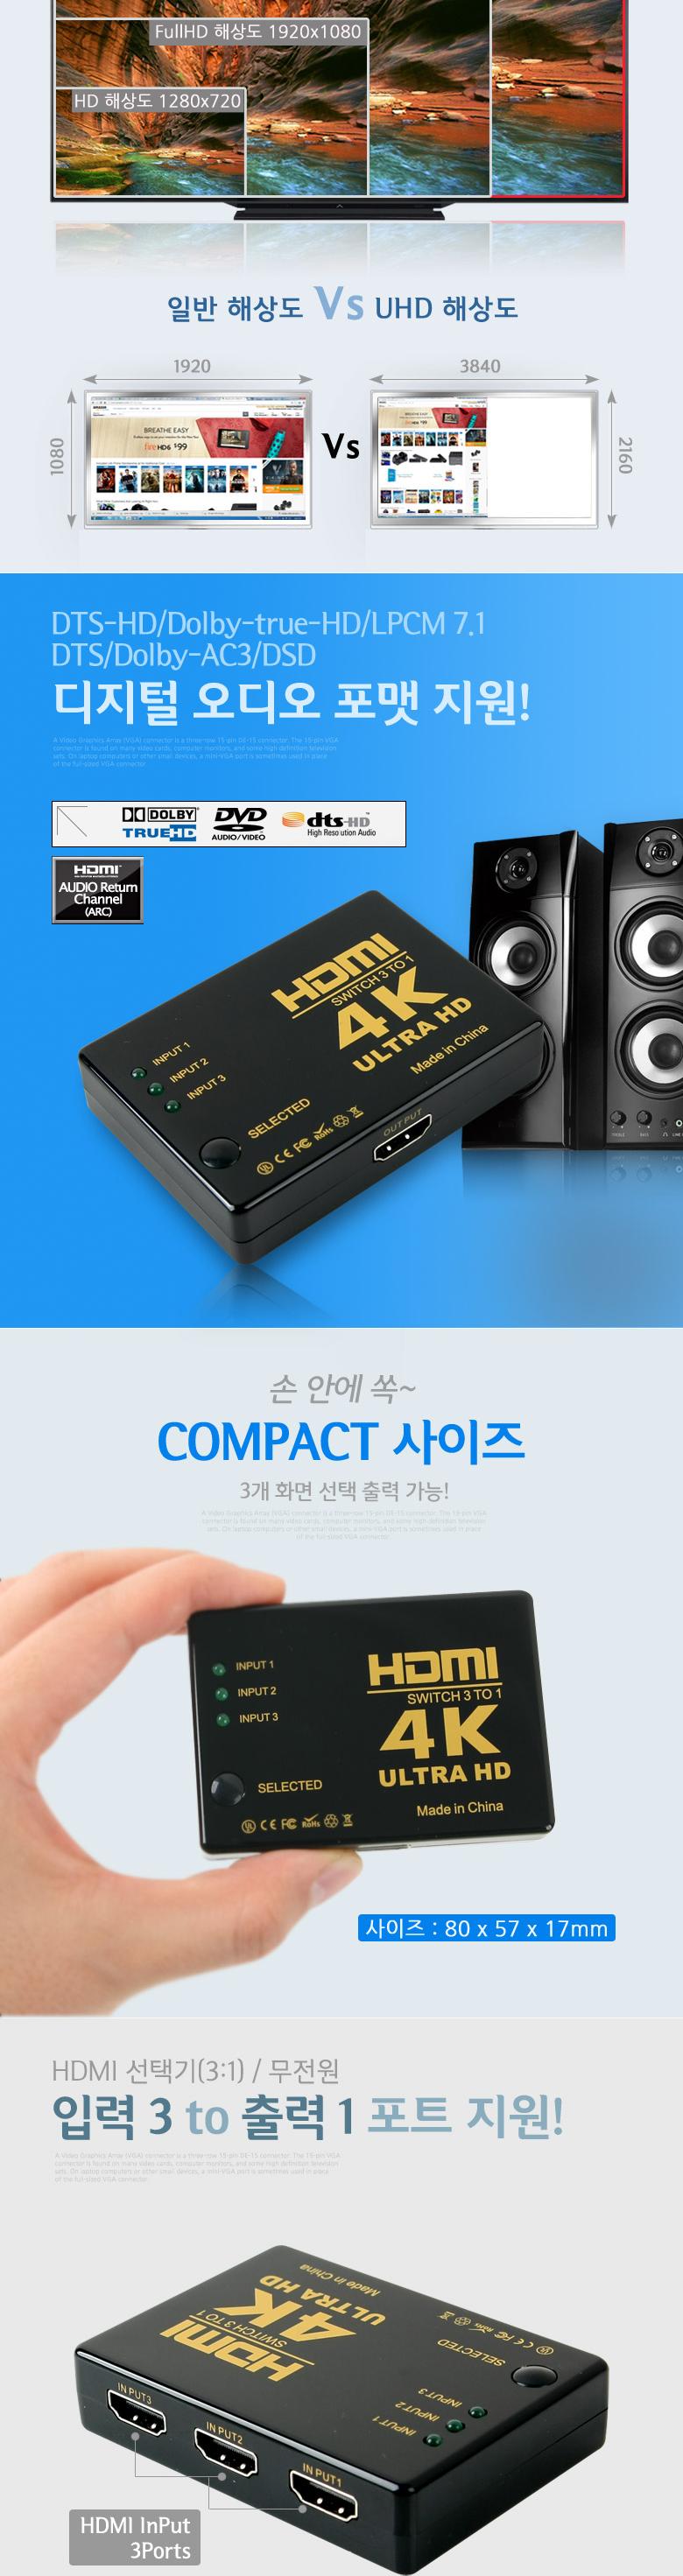 Coms HDMI ñ 3:1 4K 30Hz  HDMI HDMIȯ Ʈũ ǻֺ  ȯ ȯġ ġ